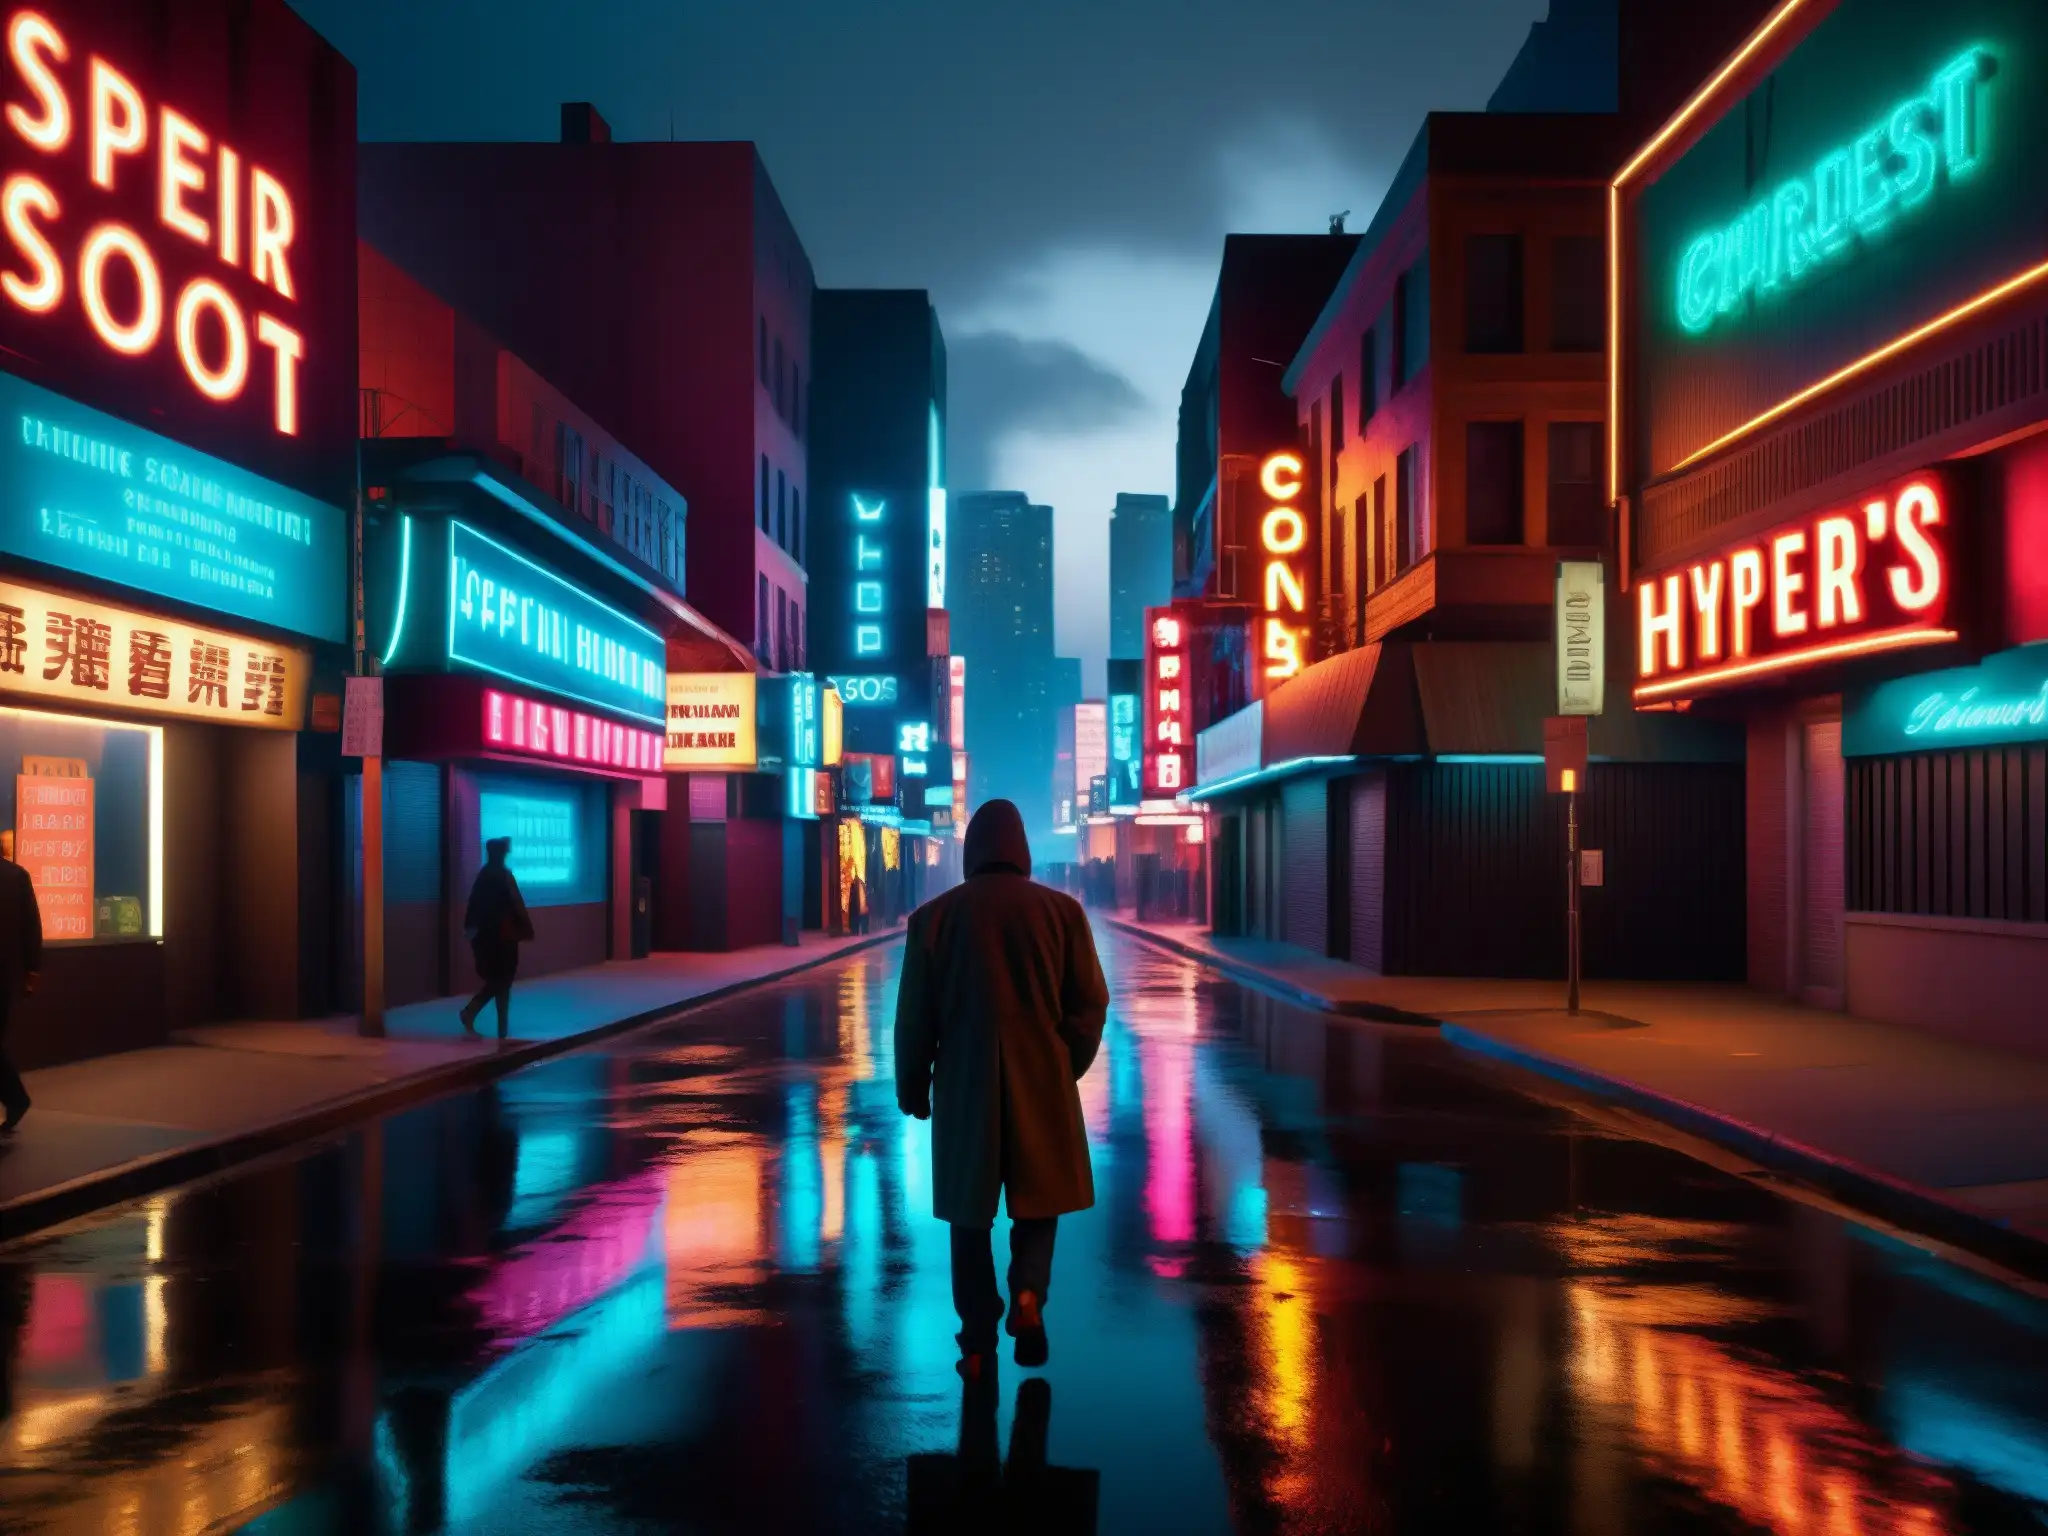 Influencia de leyendas urbanas en el entretenimiento: Un solitario caminante en la misteriosa y luminosa calle nocturna de la ciudad